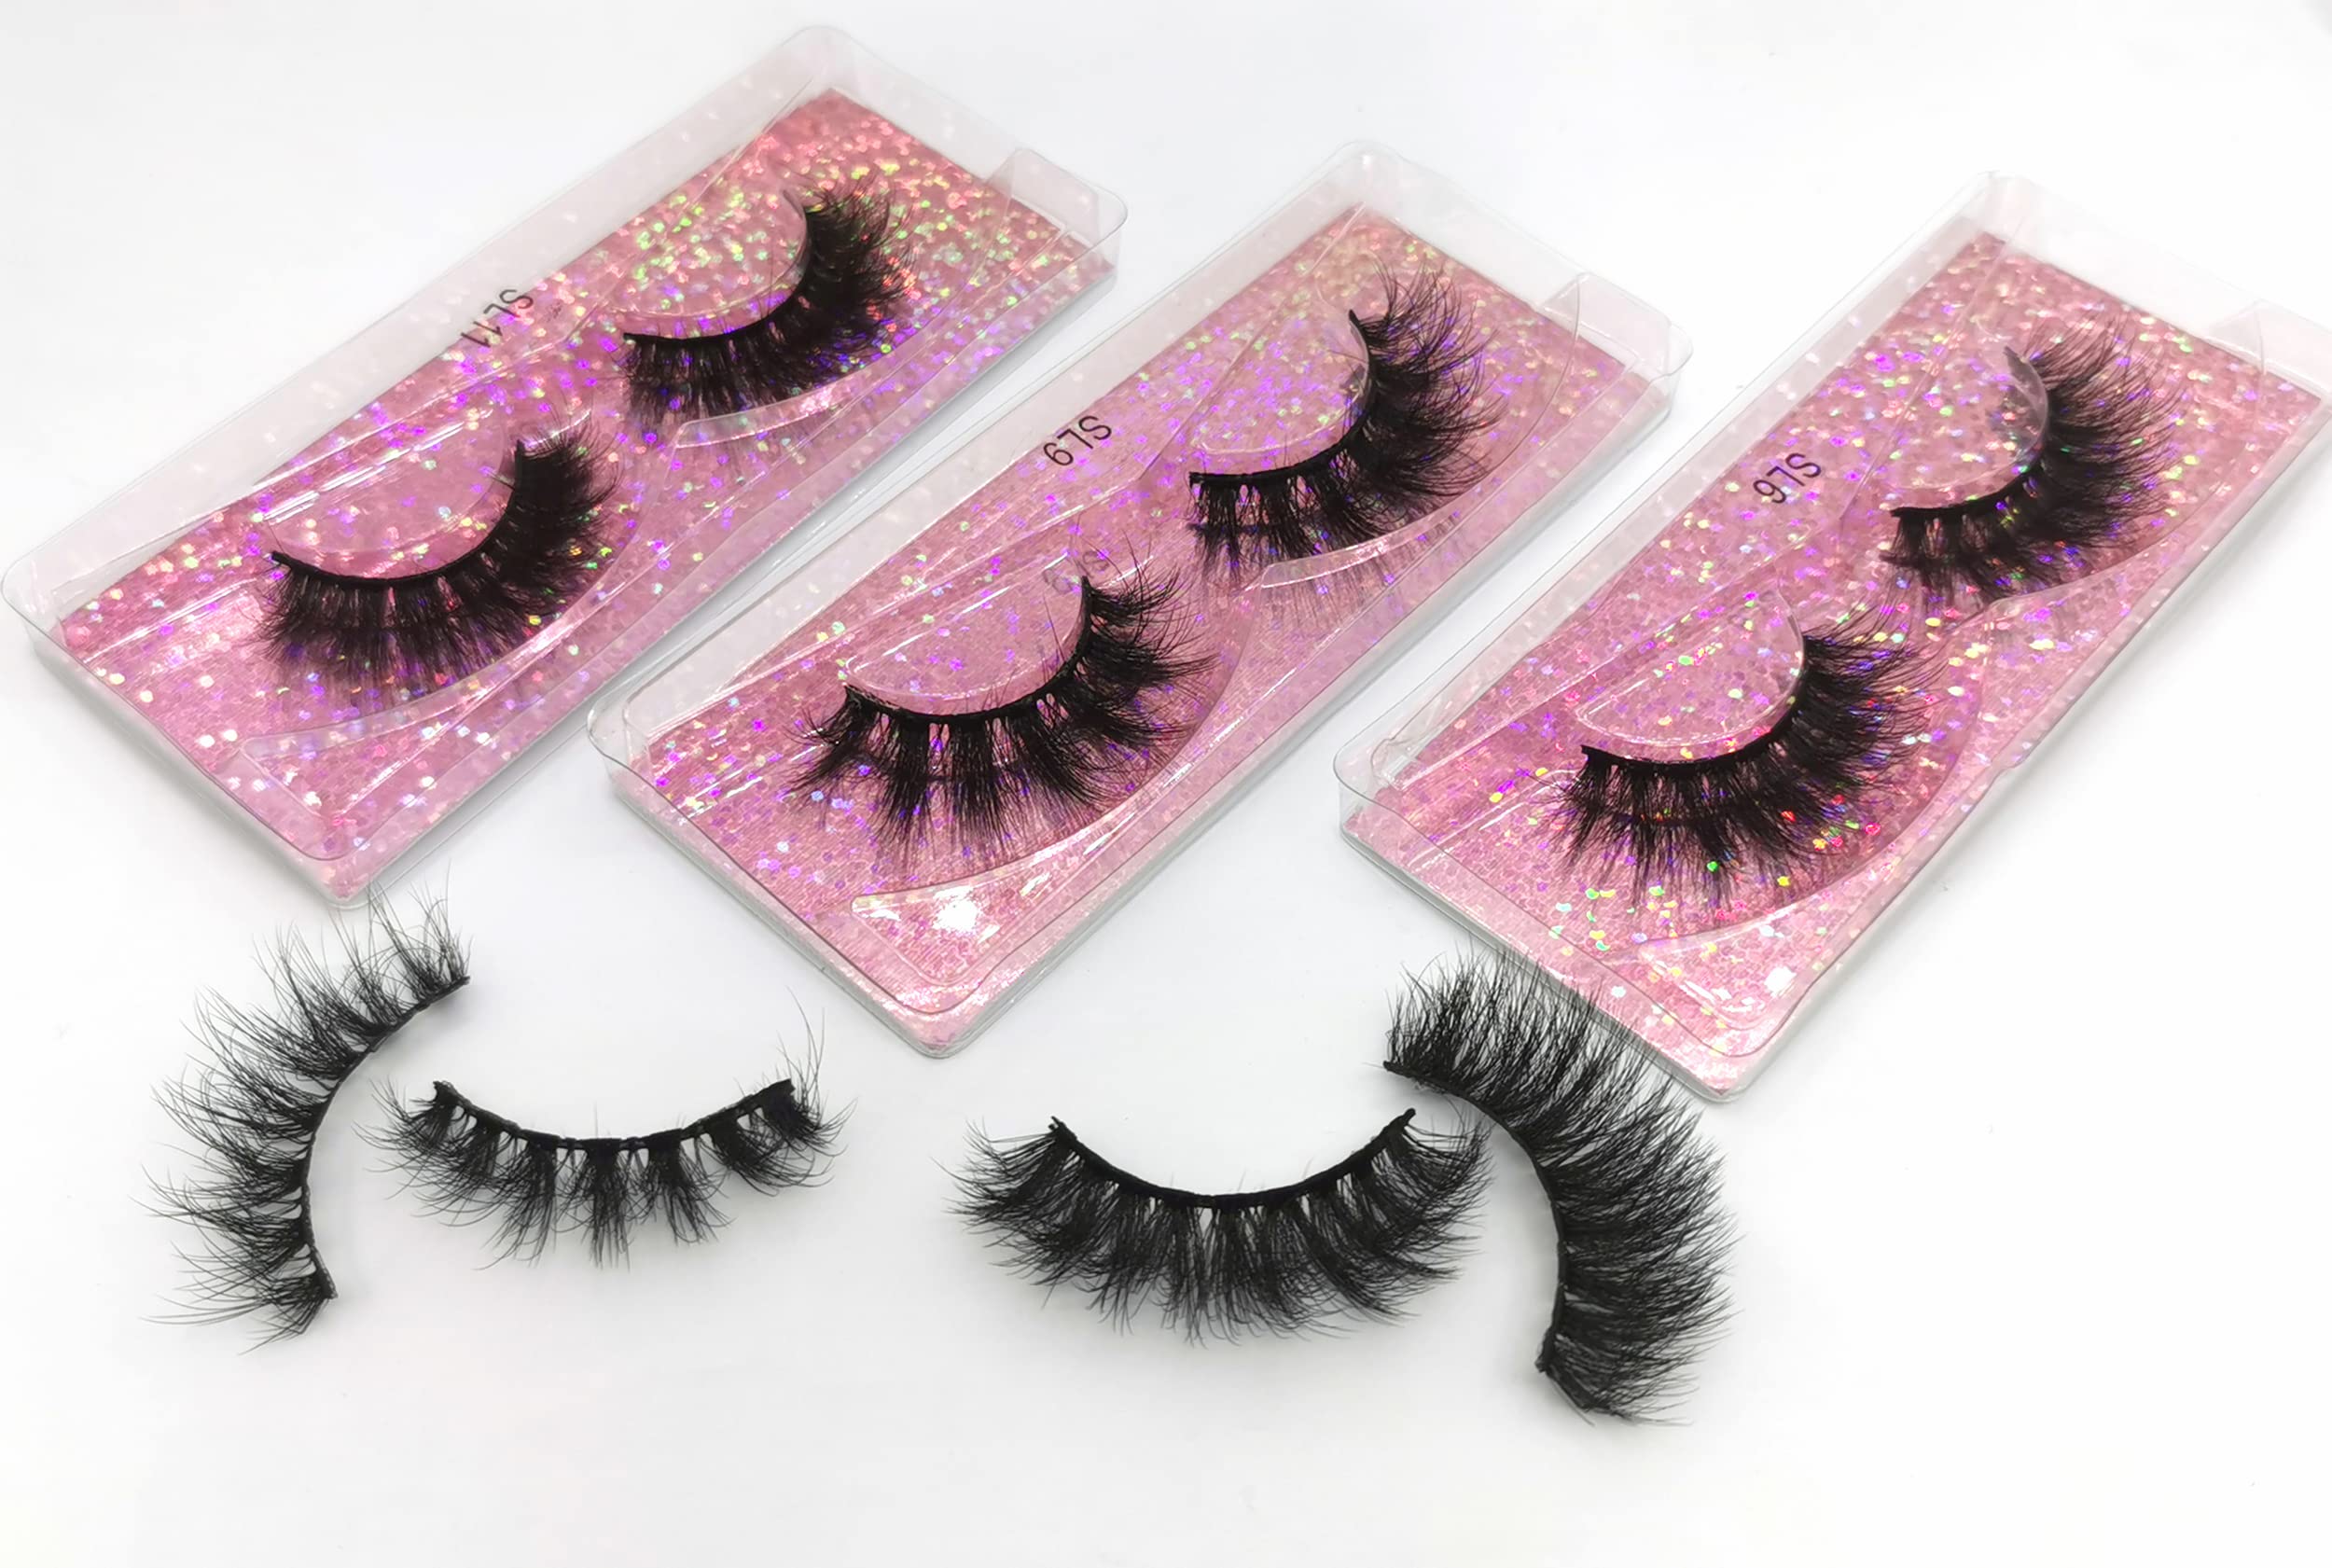 Ellazzle 10 Pairs Faux Mink Eyelashes Wholesale Lashes Pack, Lashes Natural Look 16mm-20mm False Eyelashes Pink